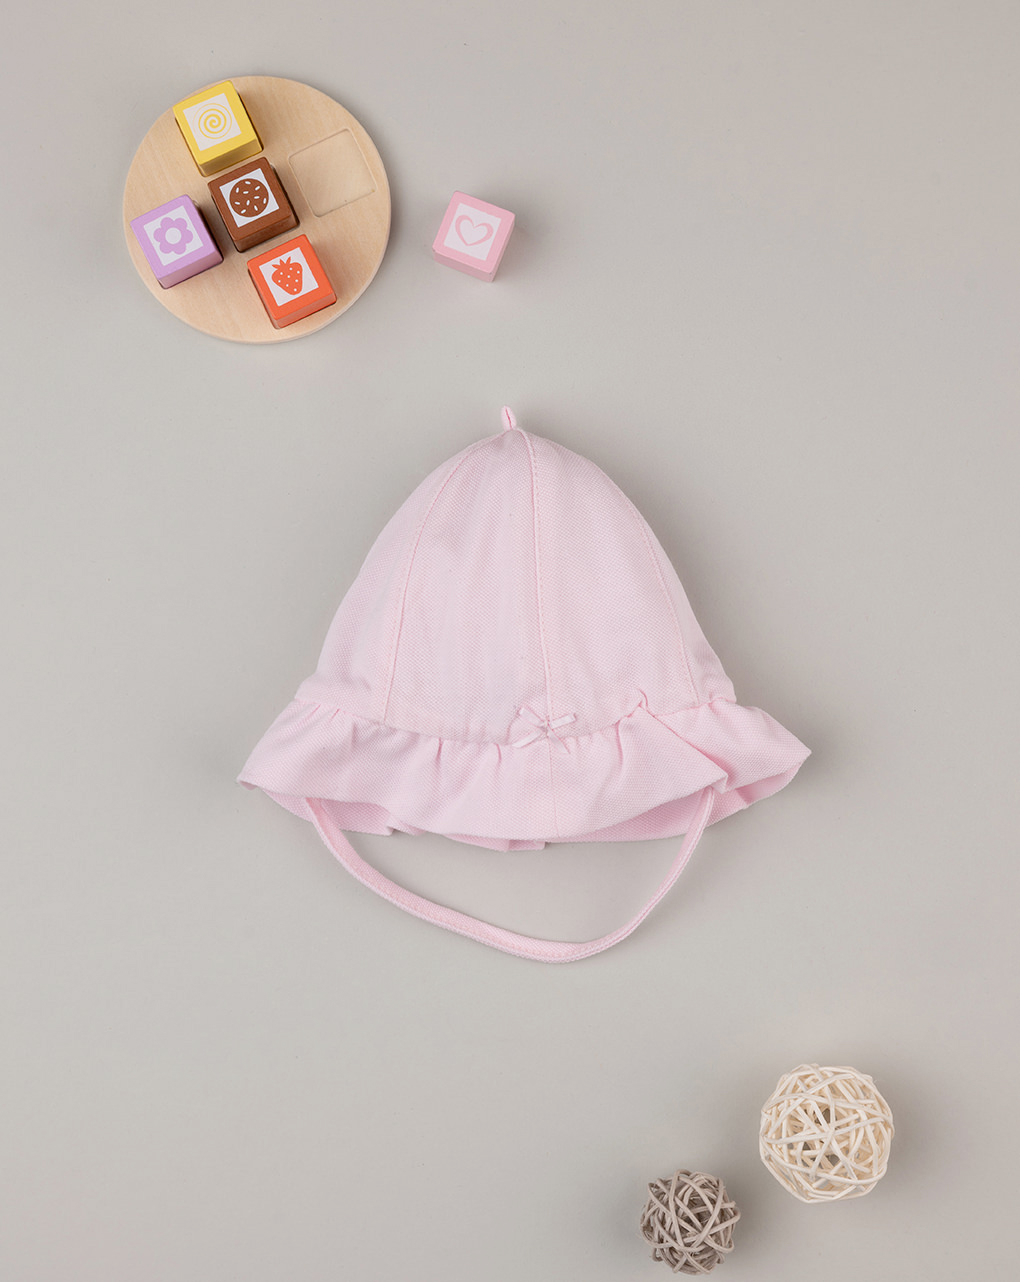 βρεφικό καπέλο πικέ ροζ για κορίτσι - Prénatal